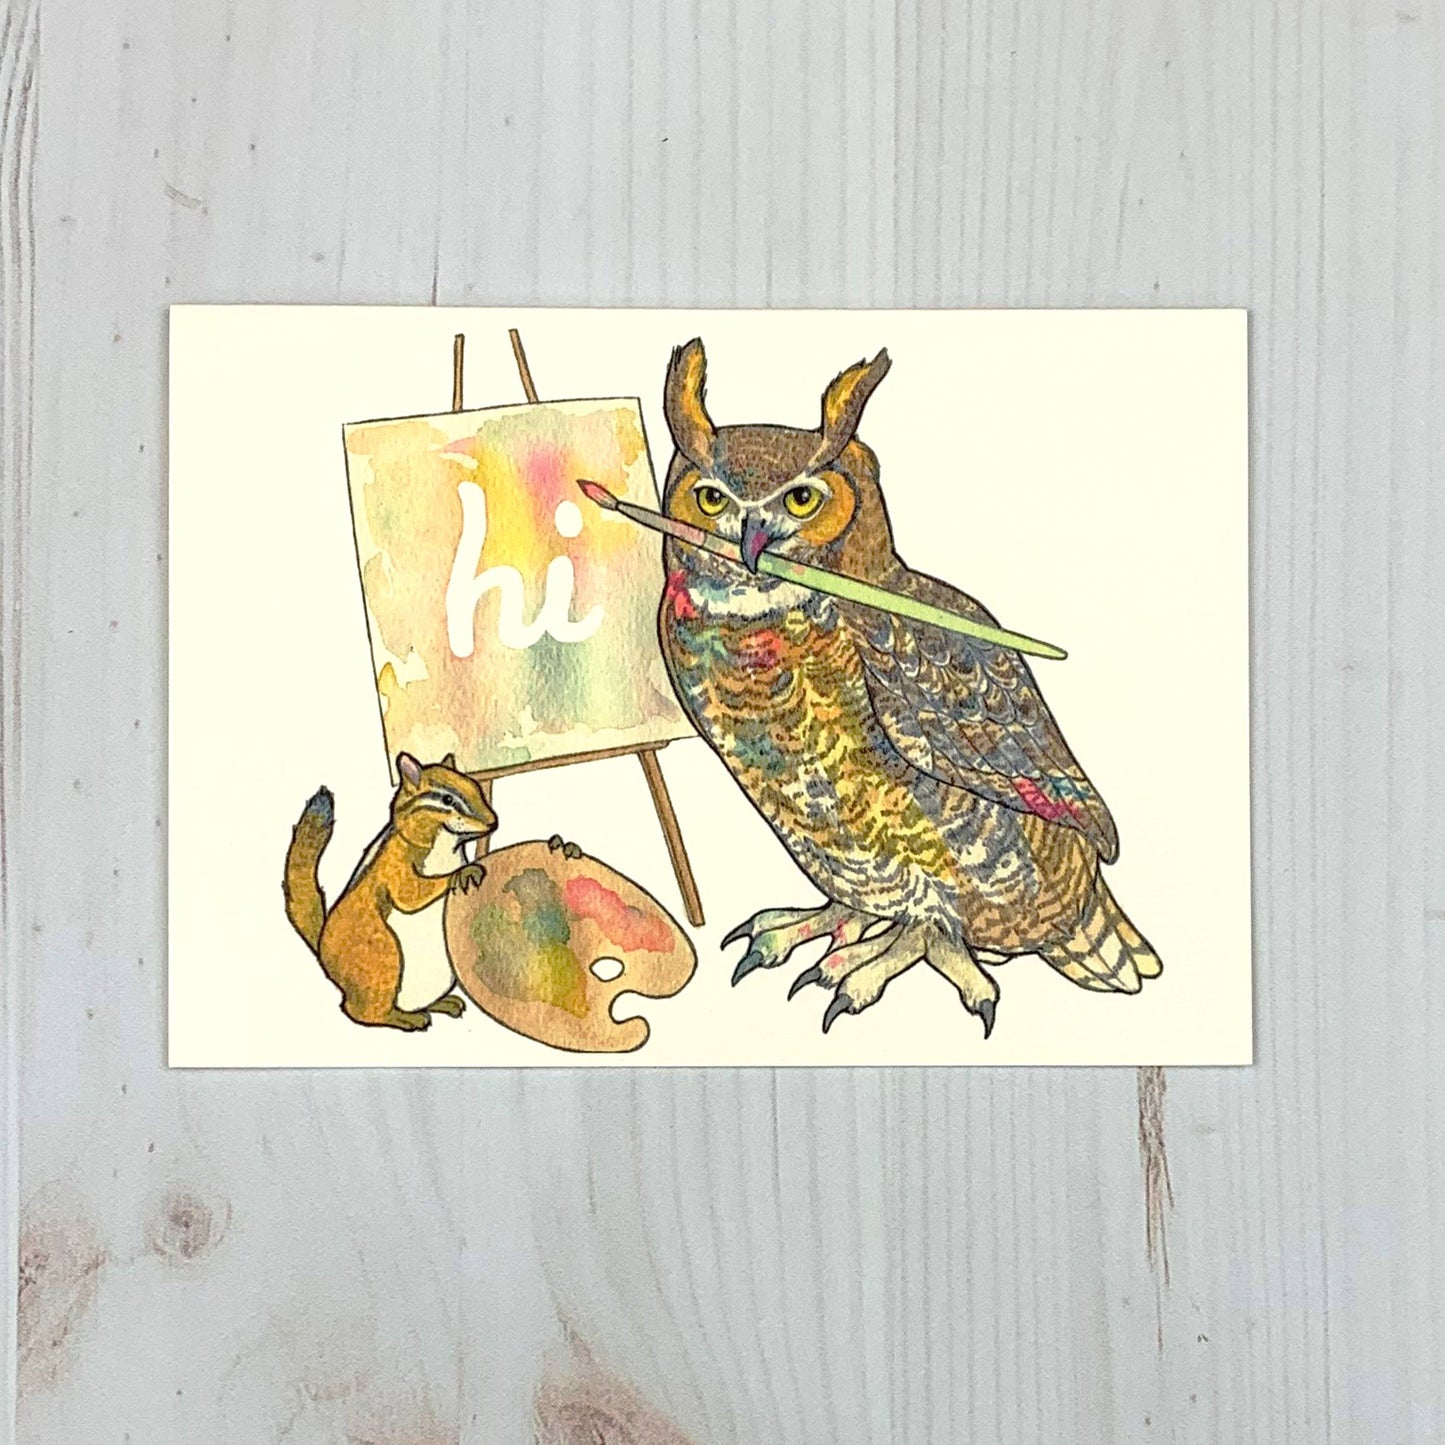 Artist Owl 5x7" Notecard